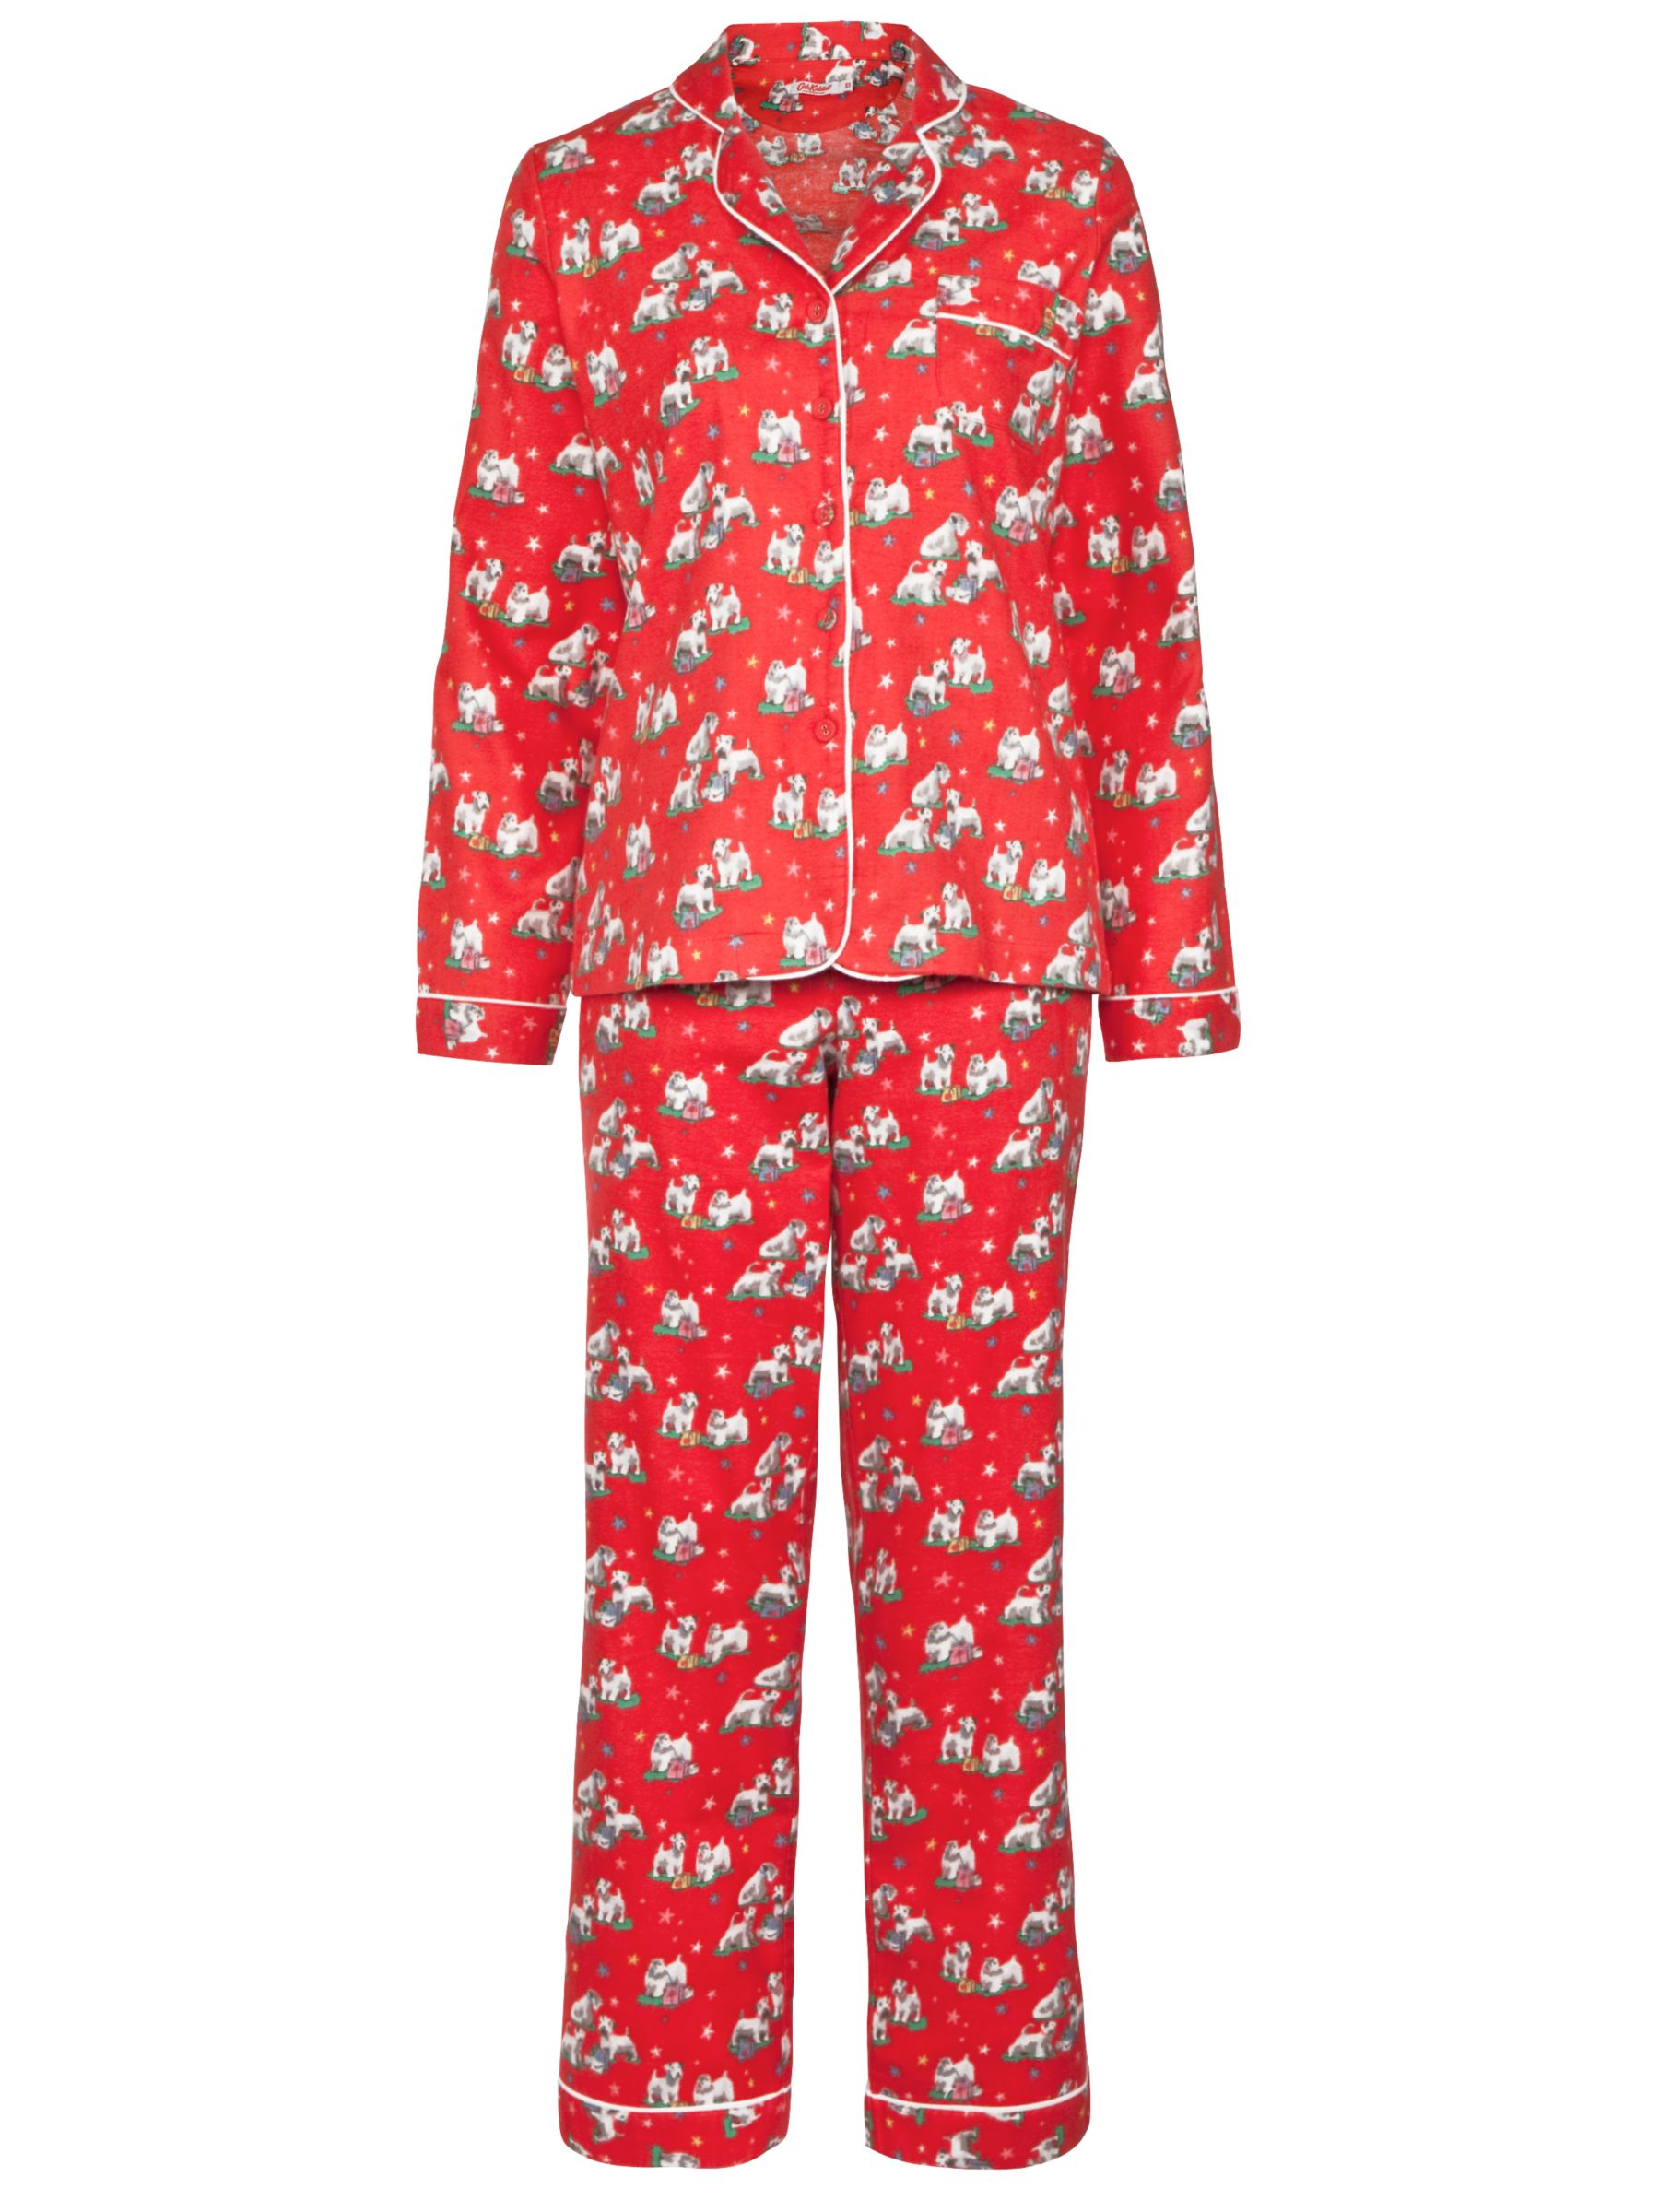 cath kidston pyjamas